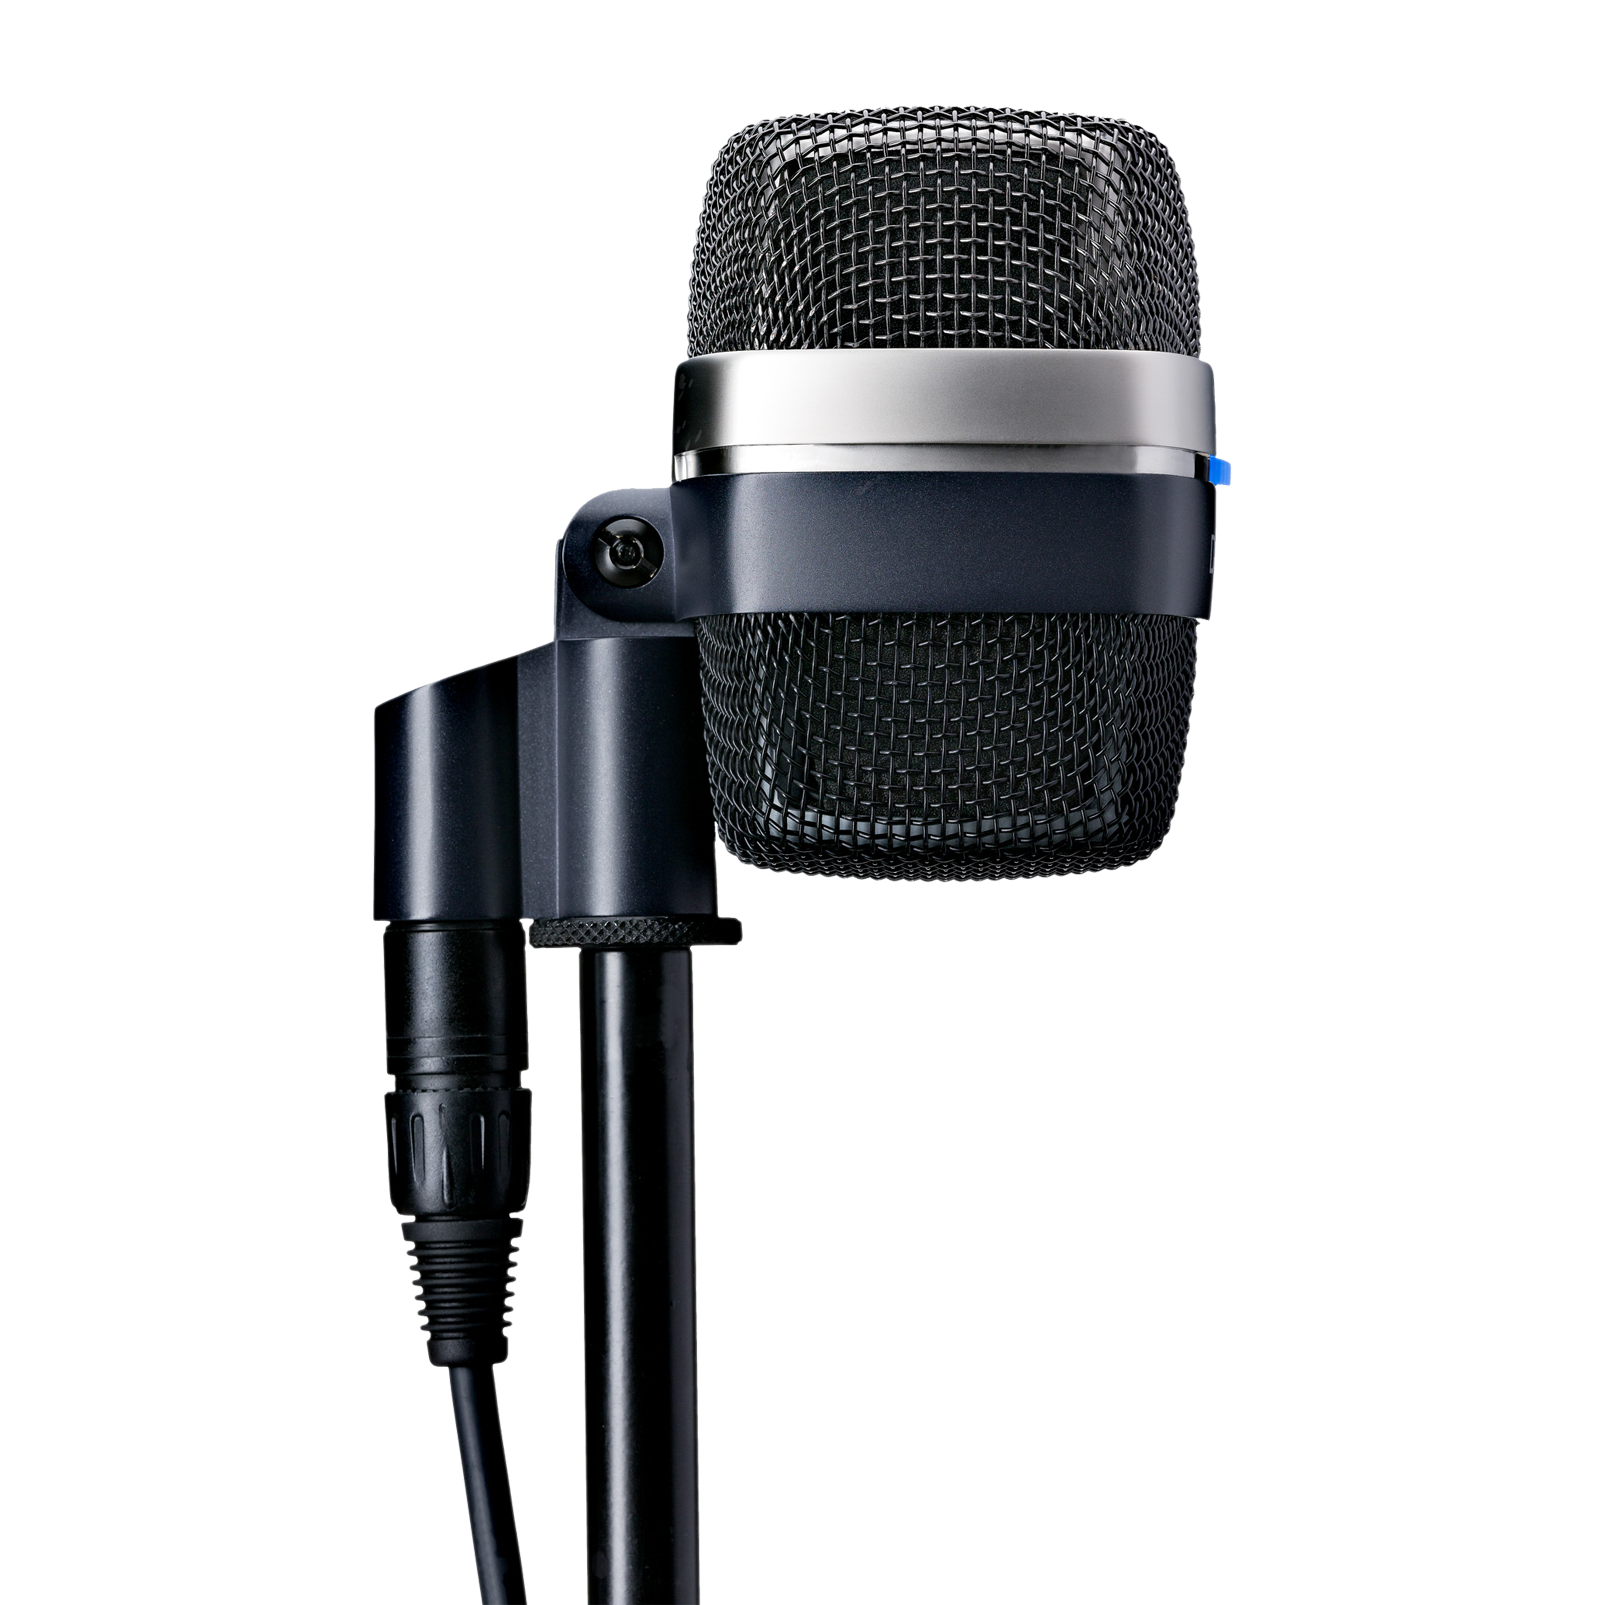 D12 VR - Black - Reference large-diaphragm dynamic microphone - Detailshot 2